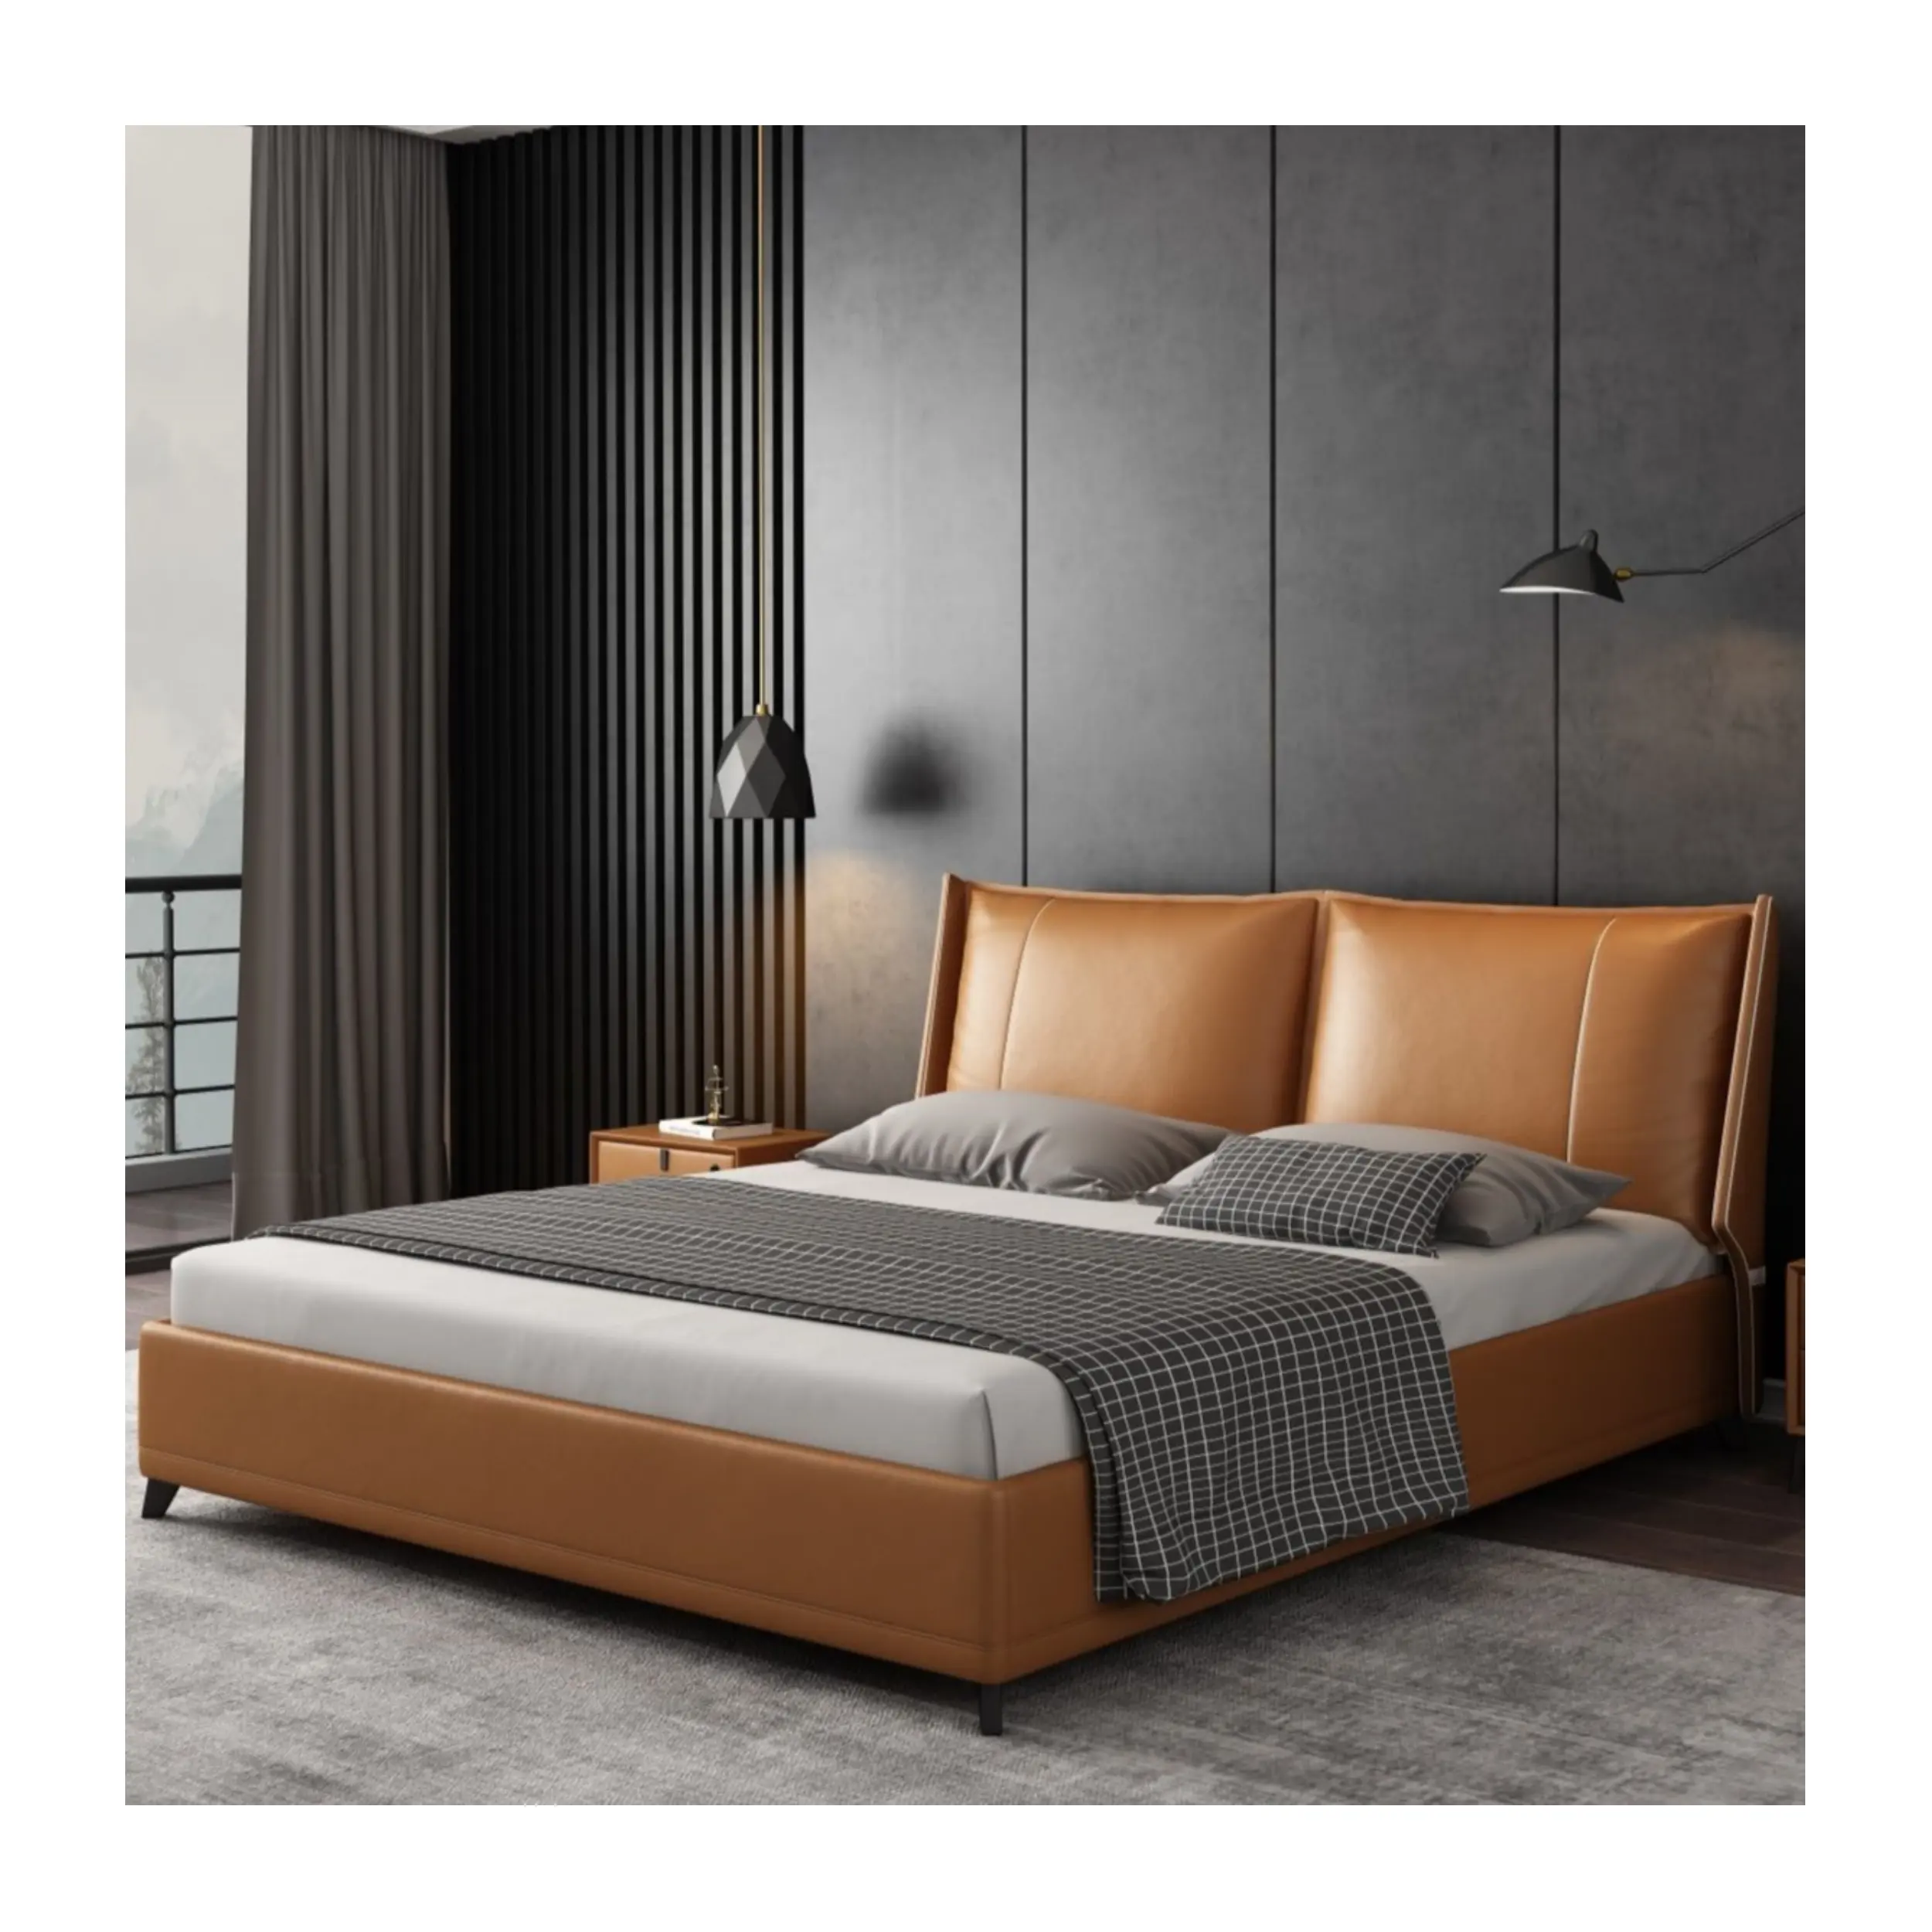 गर्म बिक्री इतालवी स्मार्ट बिस्तर चमड़े 1.8 मीटर लाइट लक्जरी मास्टर डबल बेड रूम सेट nordic सरल 2 मीटर डिजाइनर बिस्तर आराम सेट